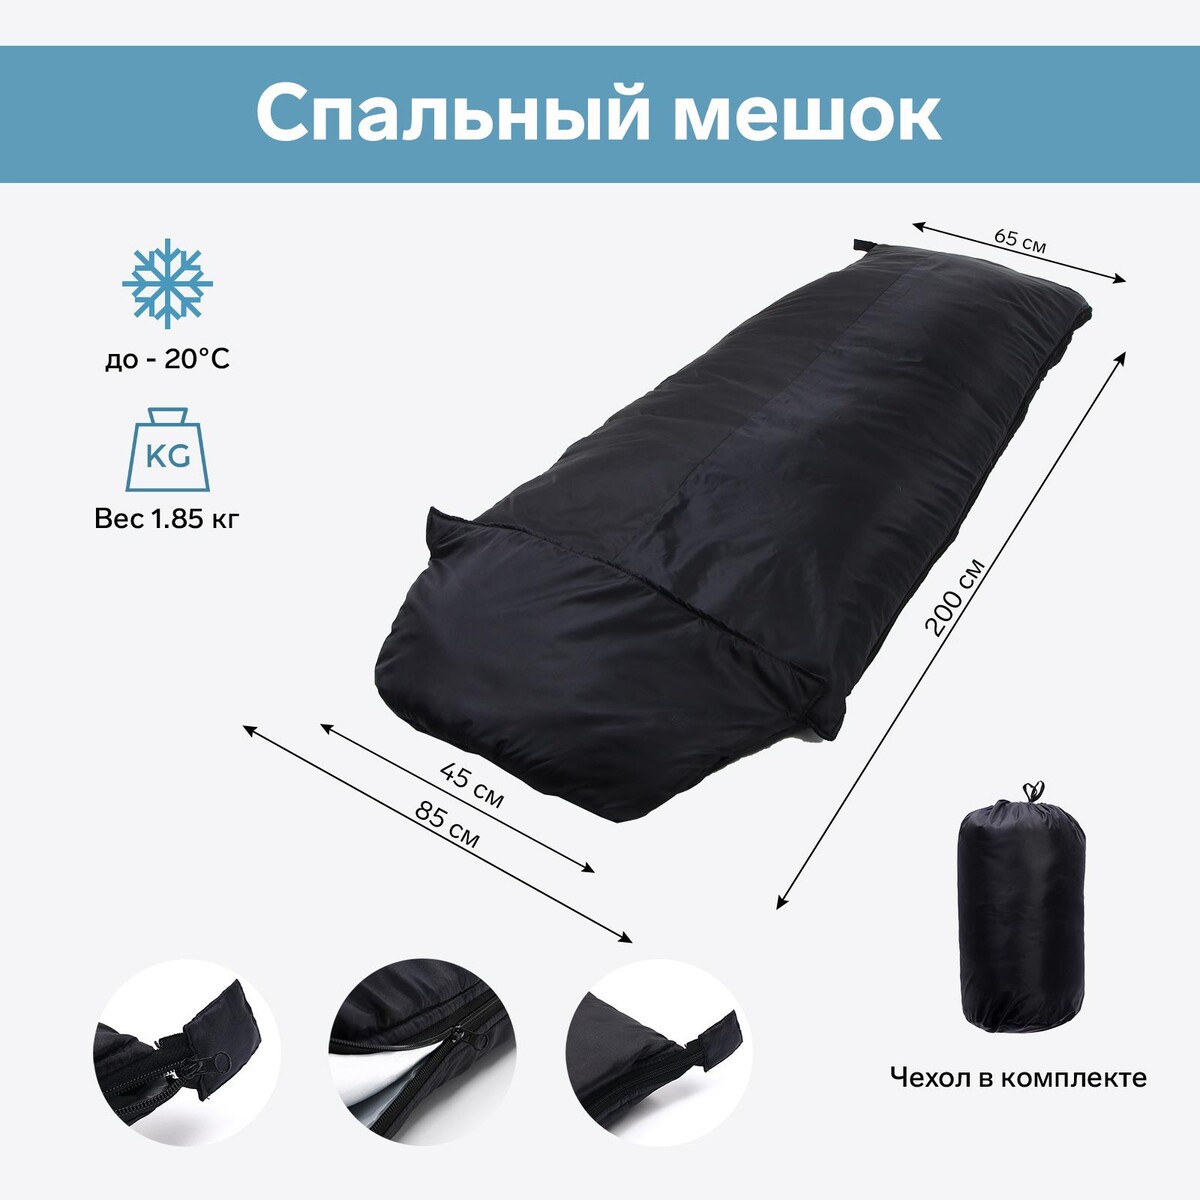 Спальный мешок туристический, цвет черный